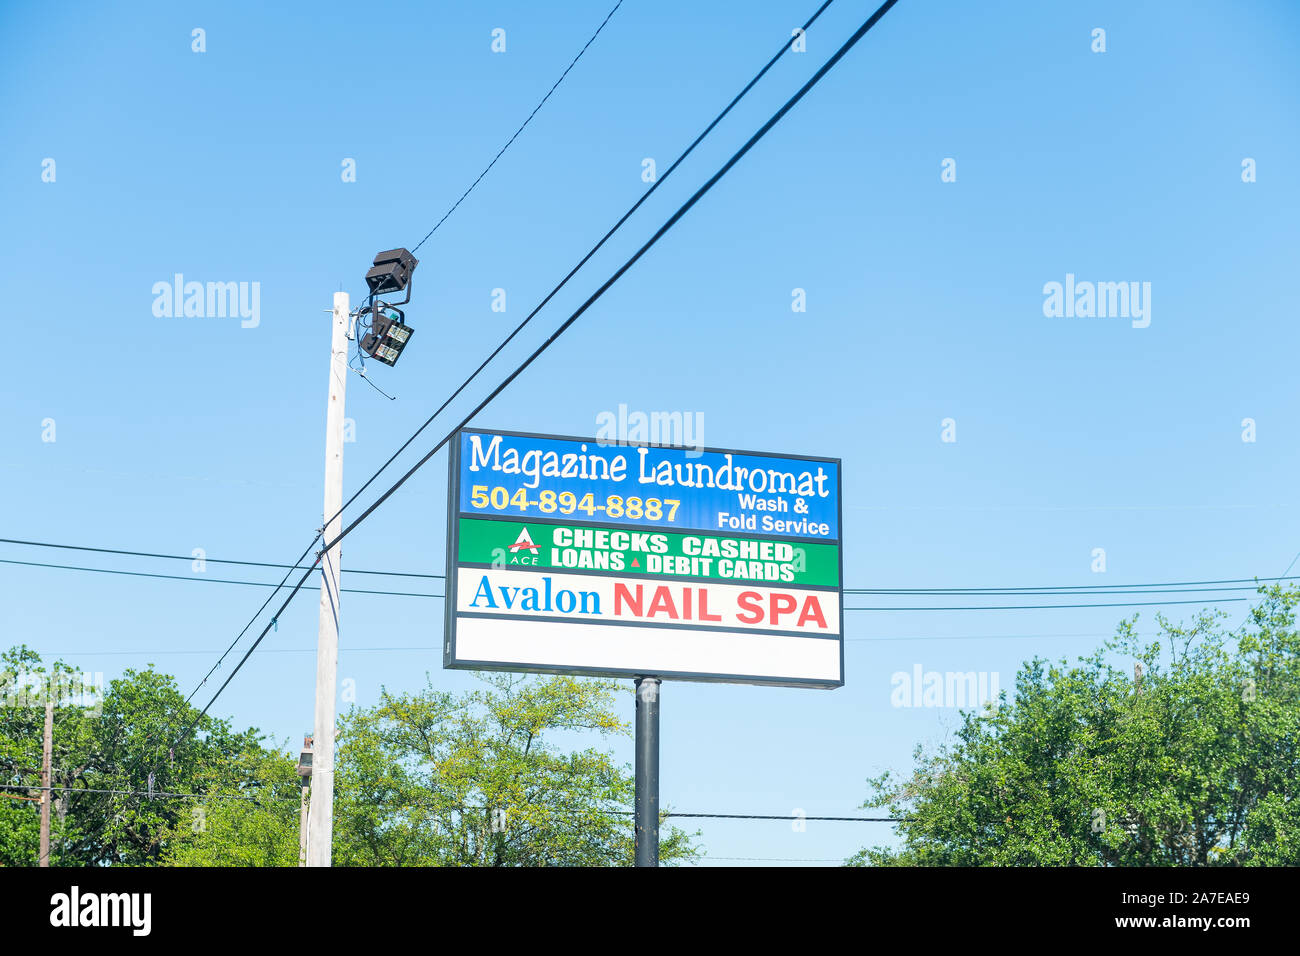 Nueva Orleans, EE.UU. - 23 de abril de 2018: la famosa revista street en el Distrito Jardín en la ciudad de Louisiana con signo para lavandería, Avalon nail spa y As. Foto de stock